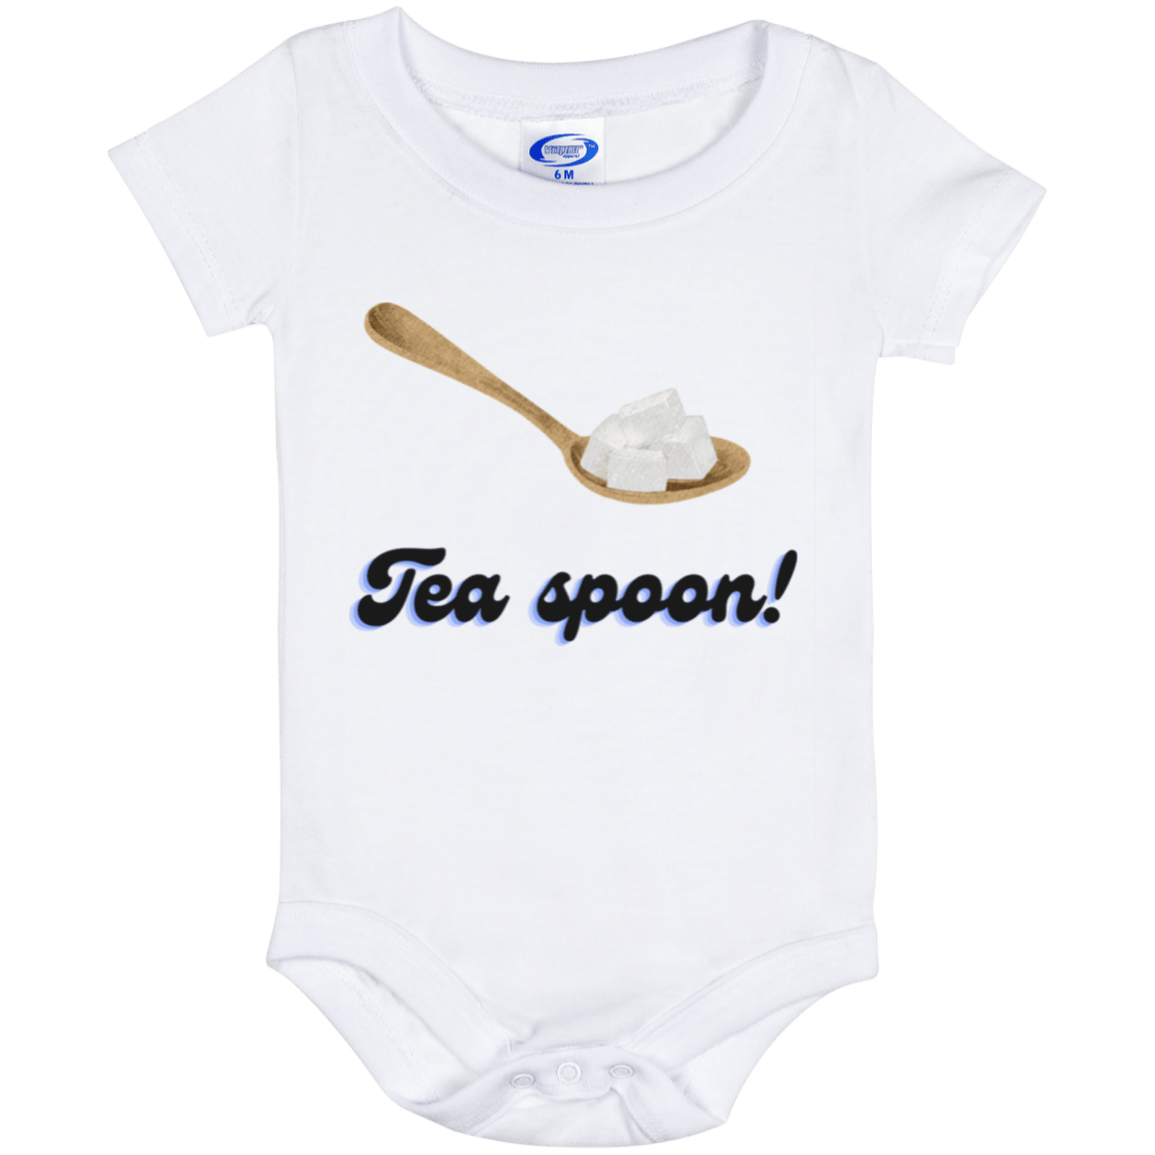 Teaspoon Baby Onesie 6 Month